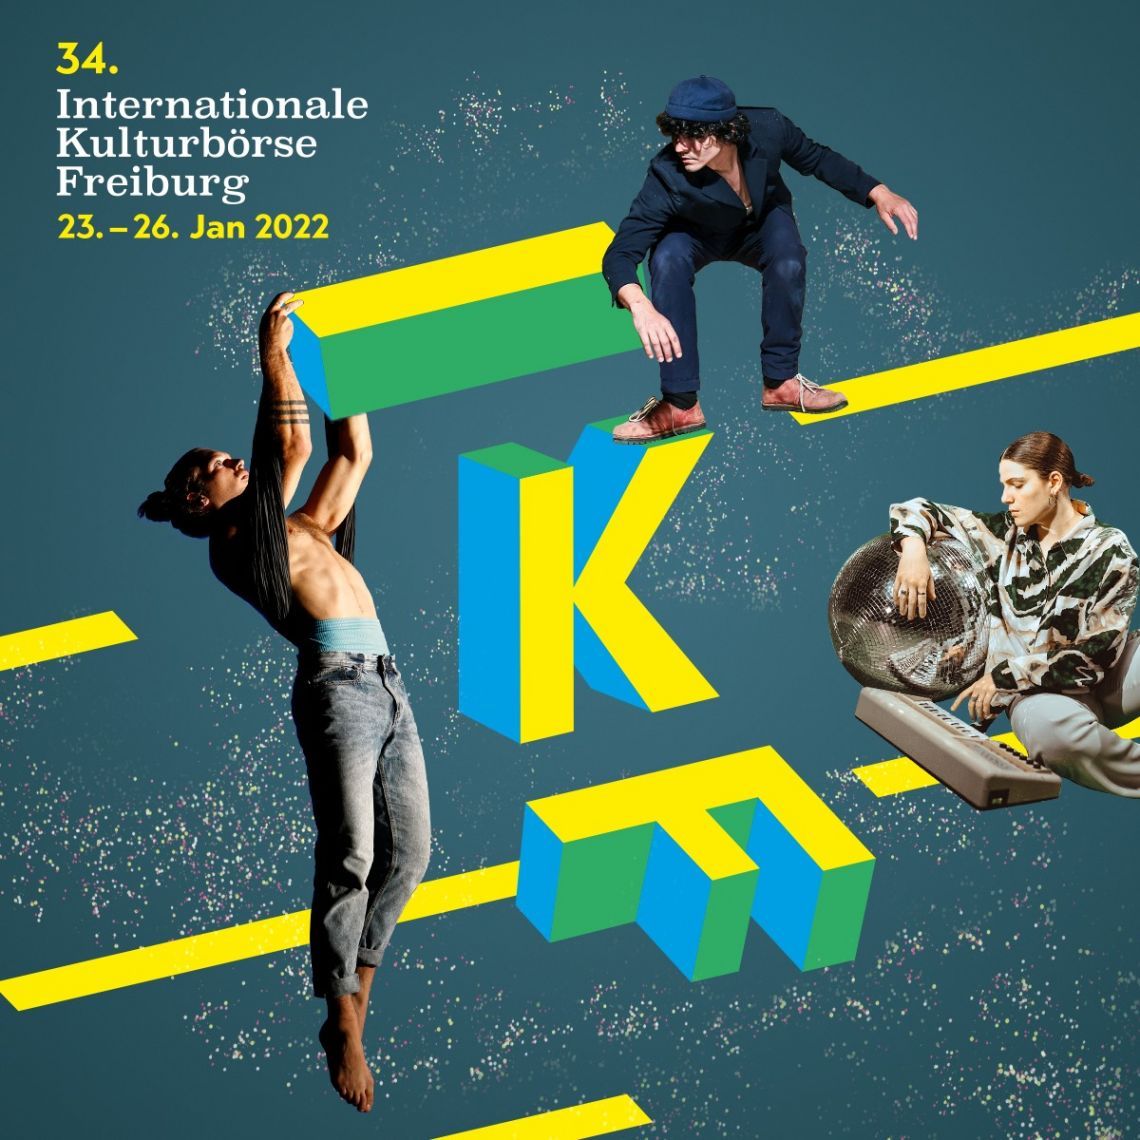 Bild zu 34. Internationale Kulturbörse Freiburg (IKF) Internationale Fachmesse für Bühnenproduktionen, Musik und Events 23. bis 26. Januar 2022, Messe Freiburg